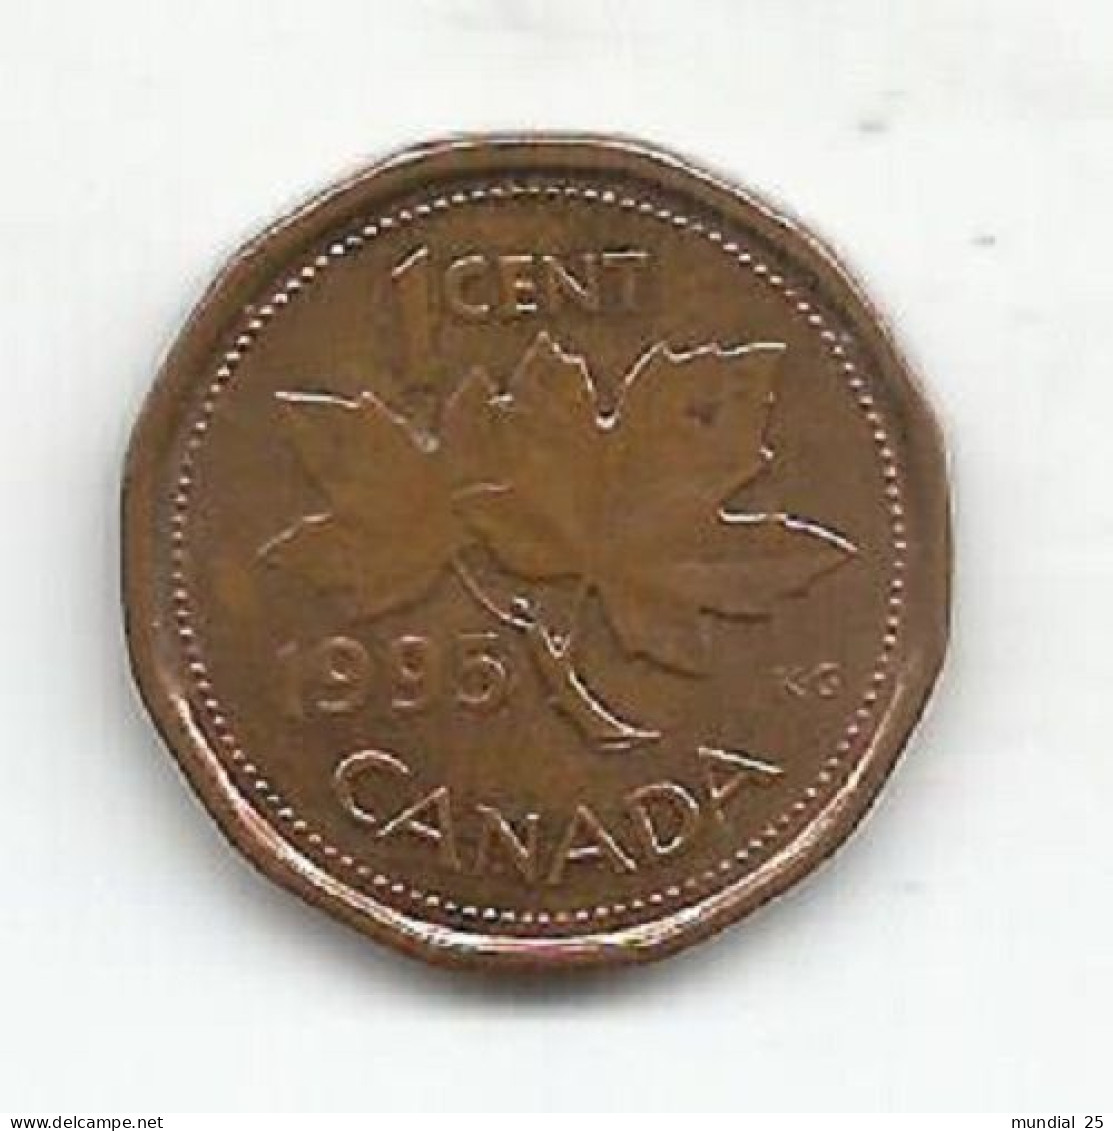 CANADA 1 CENT 1995 - Canada